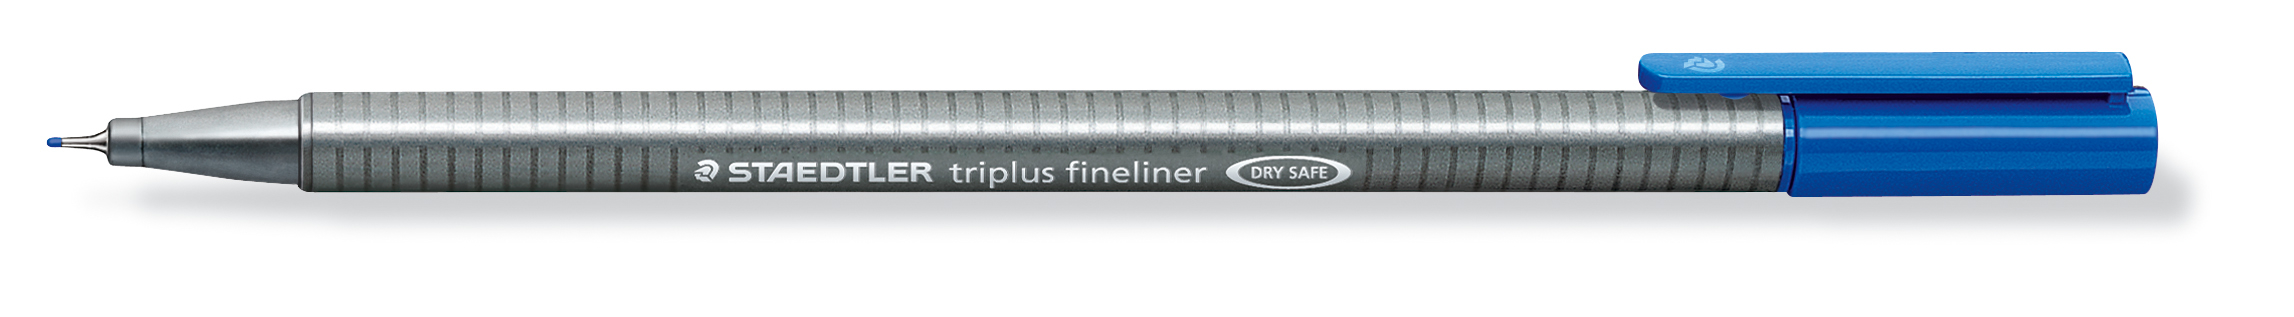 STAEDTLER Triplus Fineliner 0,3mm 334-37 blau